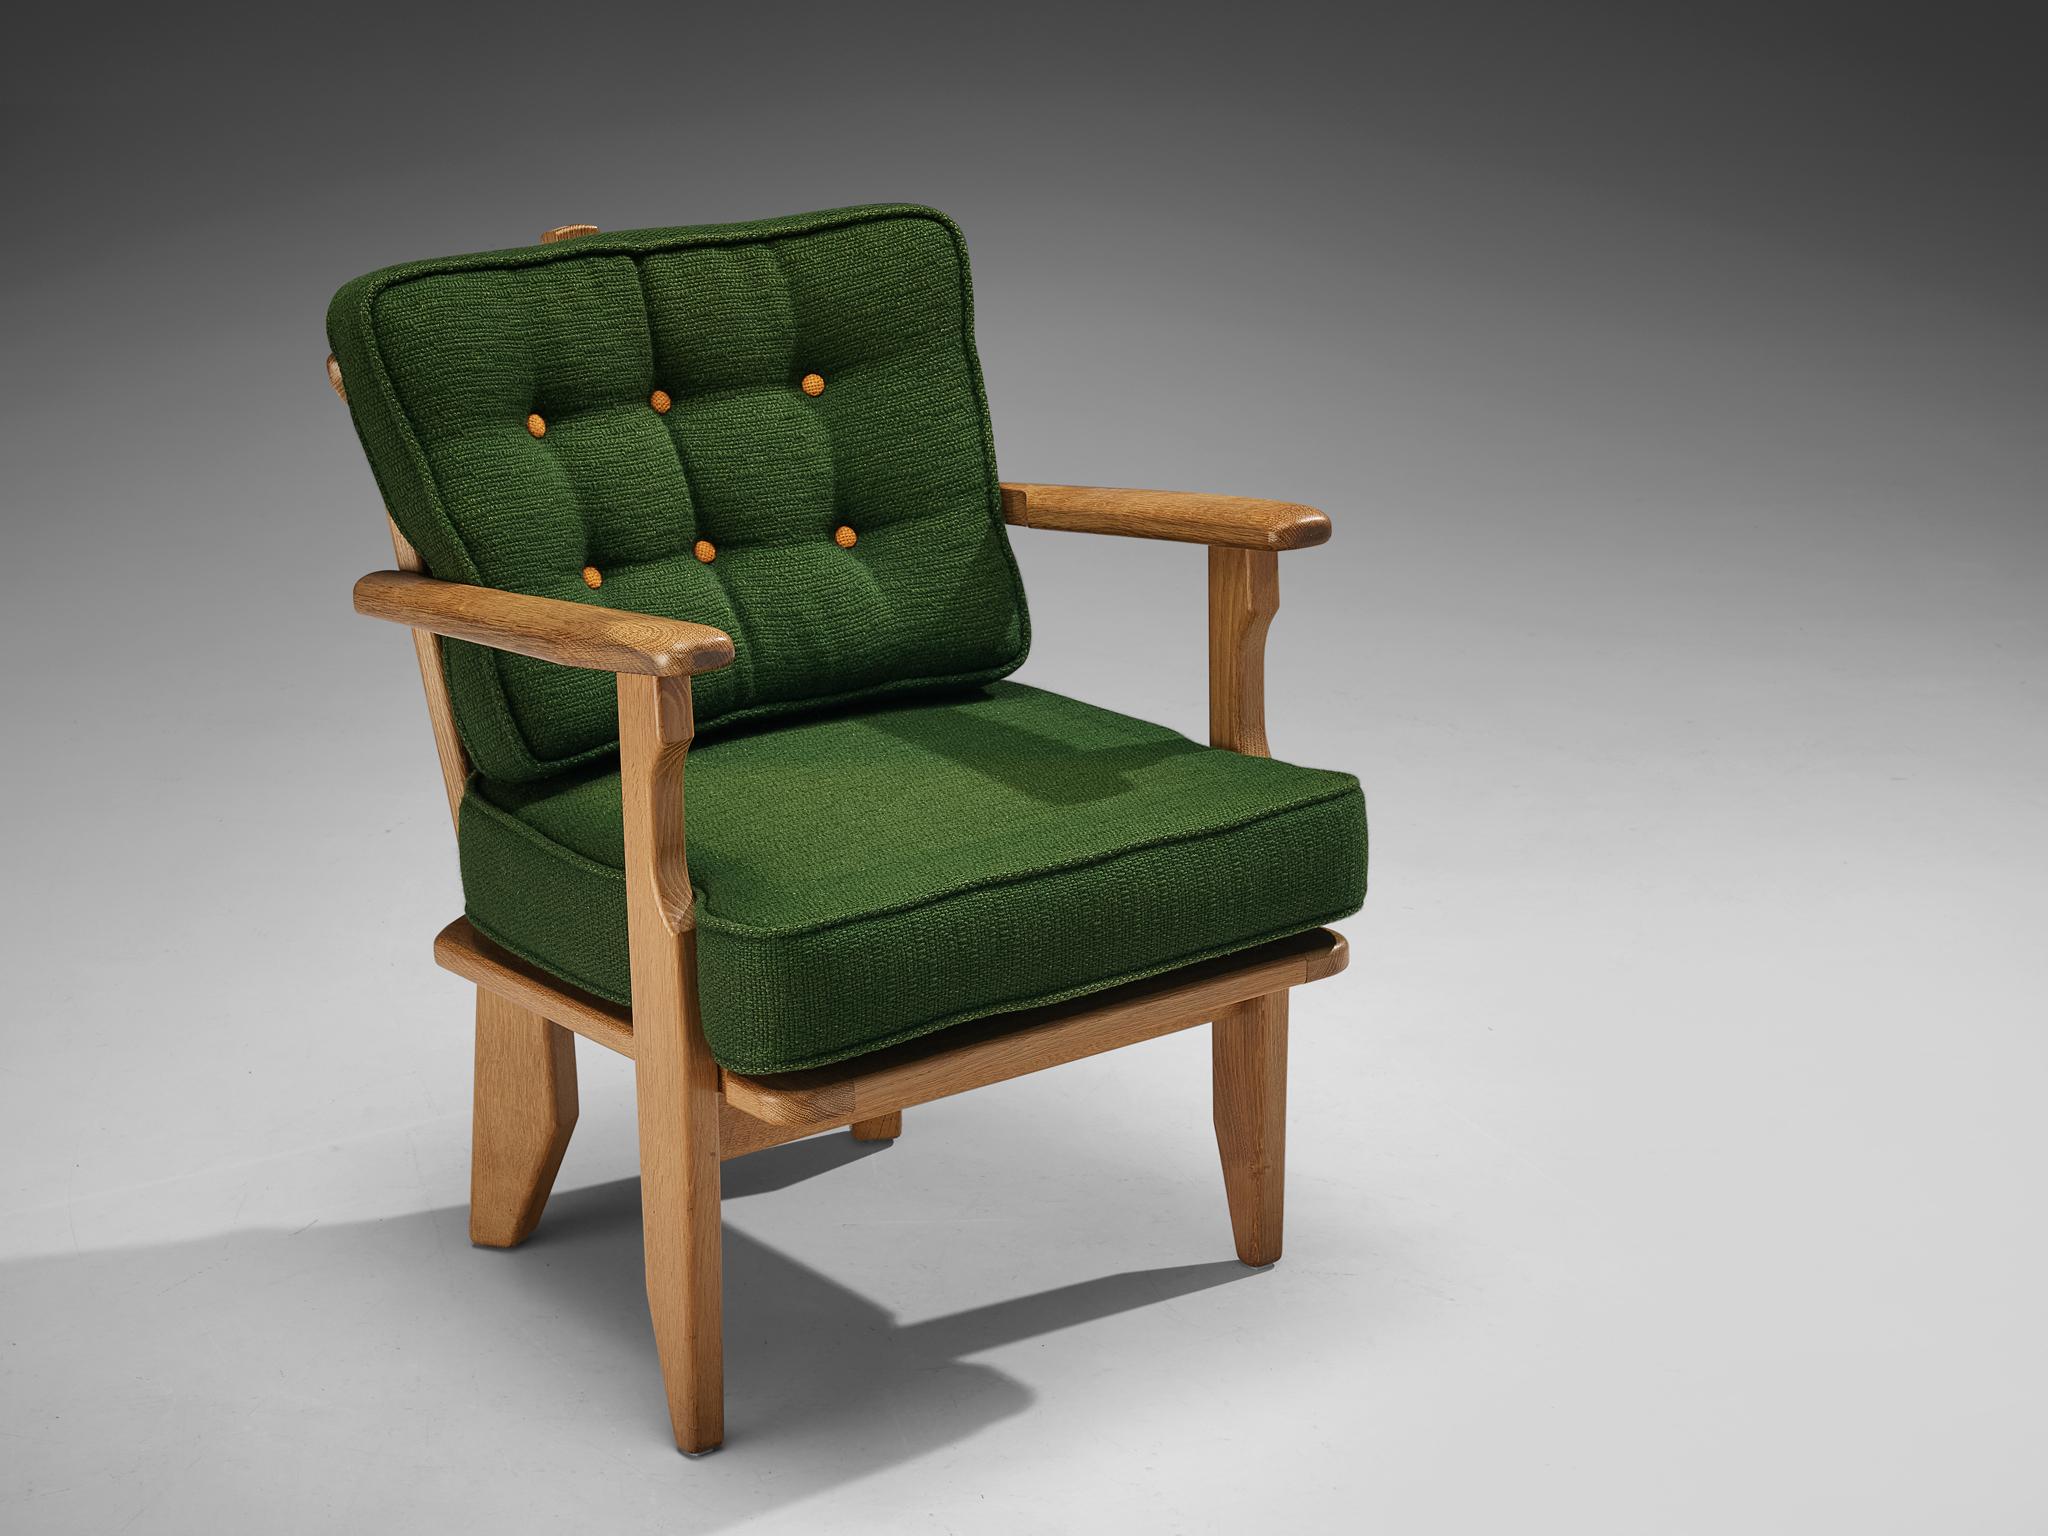 Guillerme et Chambron für Votre Maison, Loungesessel, Eiche, Stoff, Frankreich, 1960er Jahre

Ein skulpturaler Sessel von Guillerme und Chambron, der sehr gut ausgeführt ist und aus massiver, geschnitzter Eiche besteht. Dieser Sessel zeichnet sich